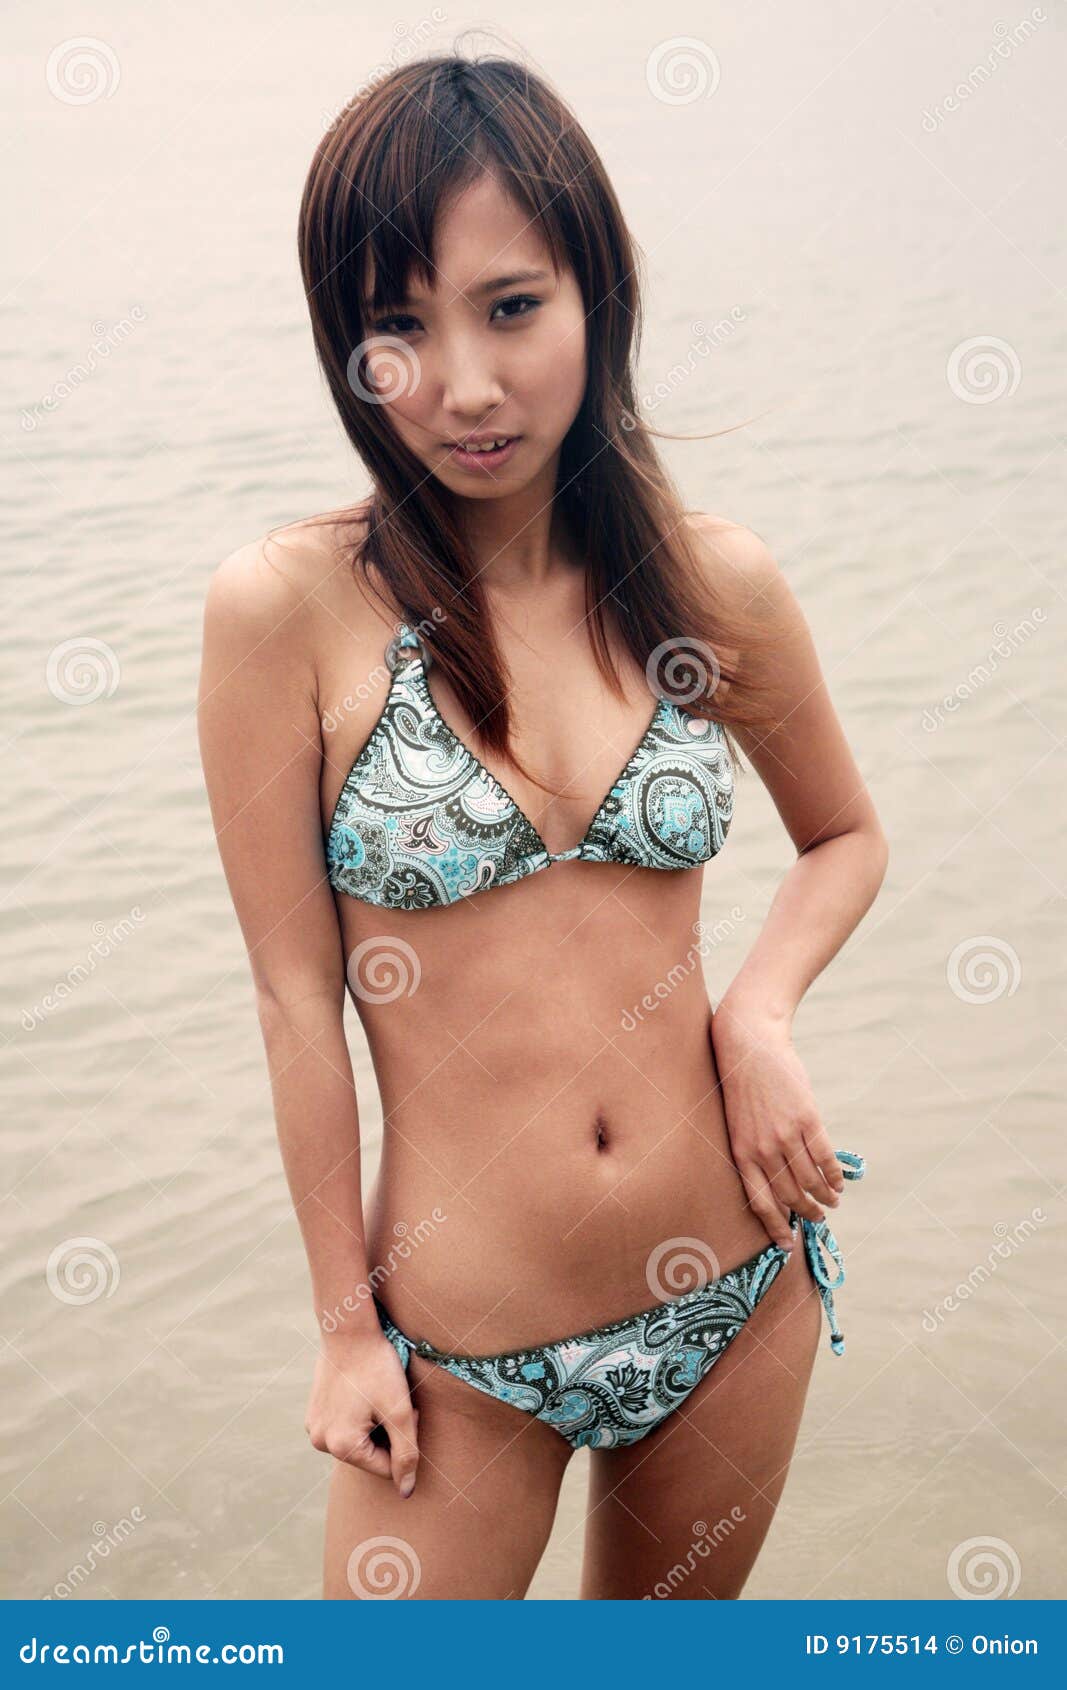 sweet asian busty woman